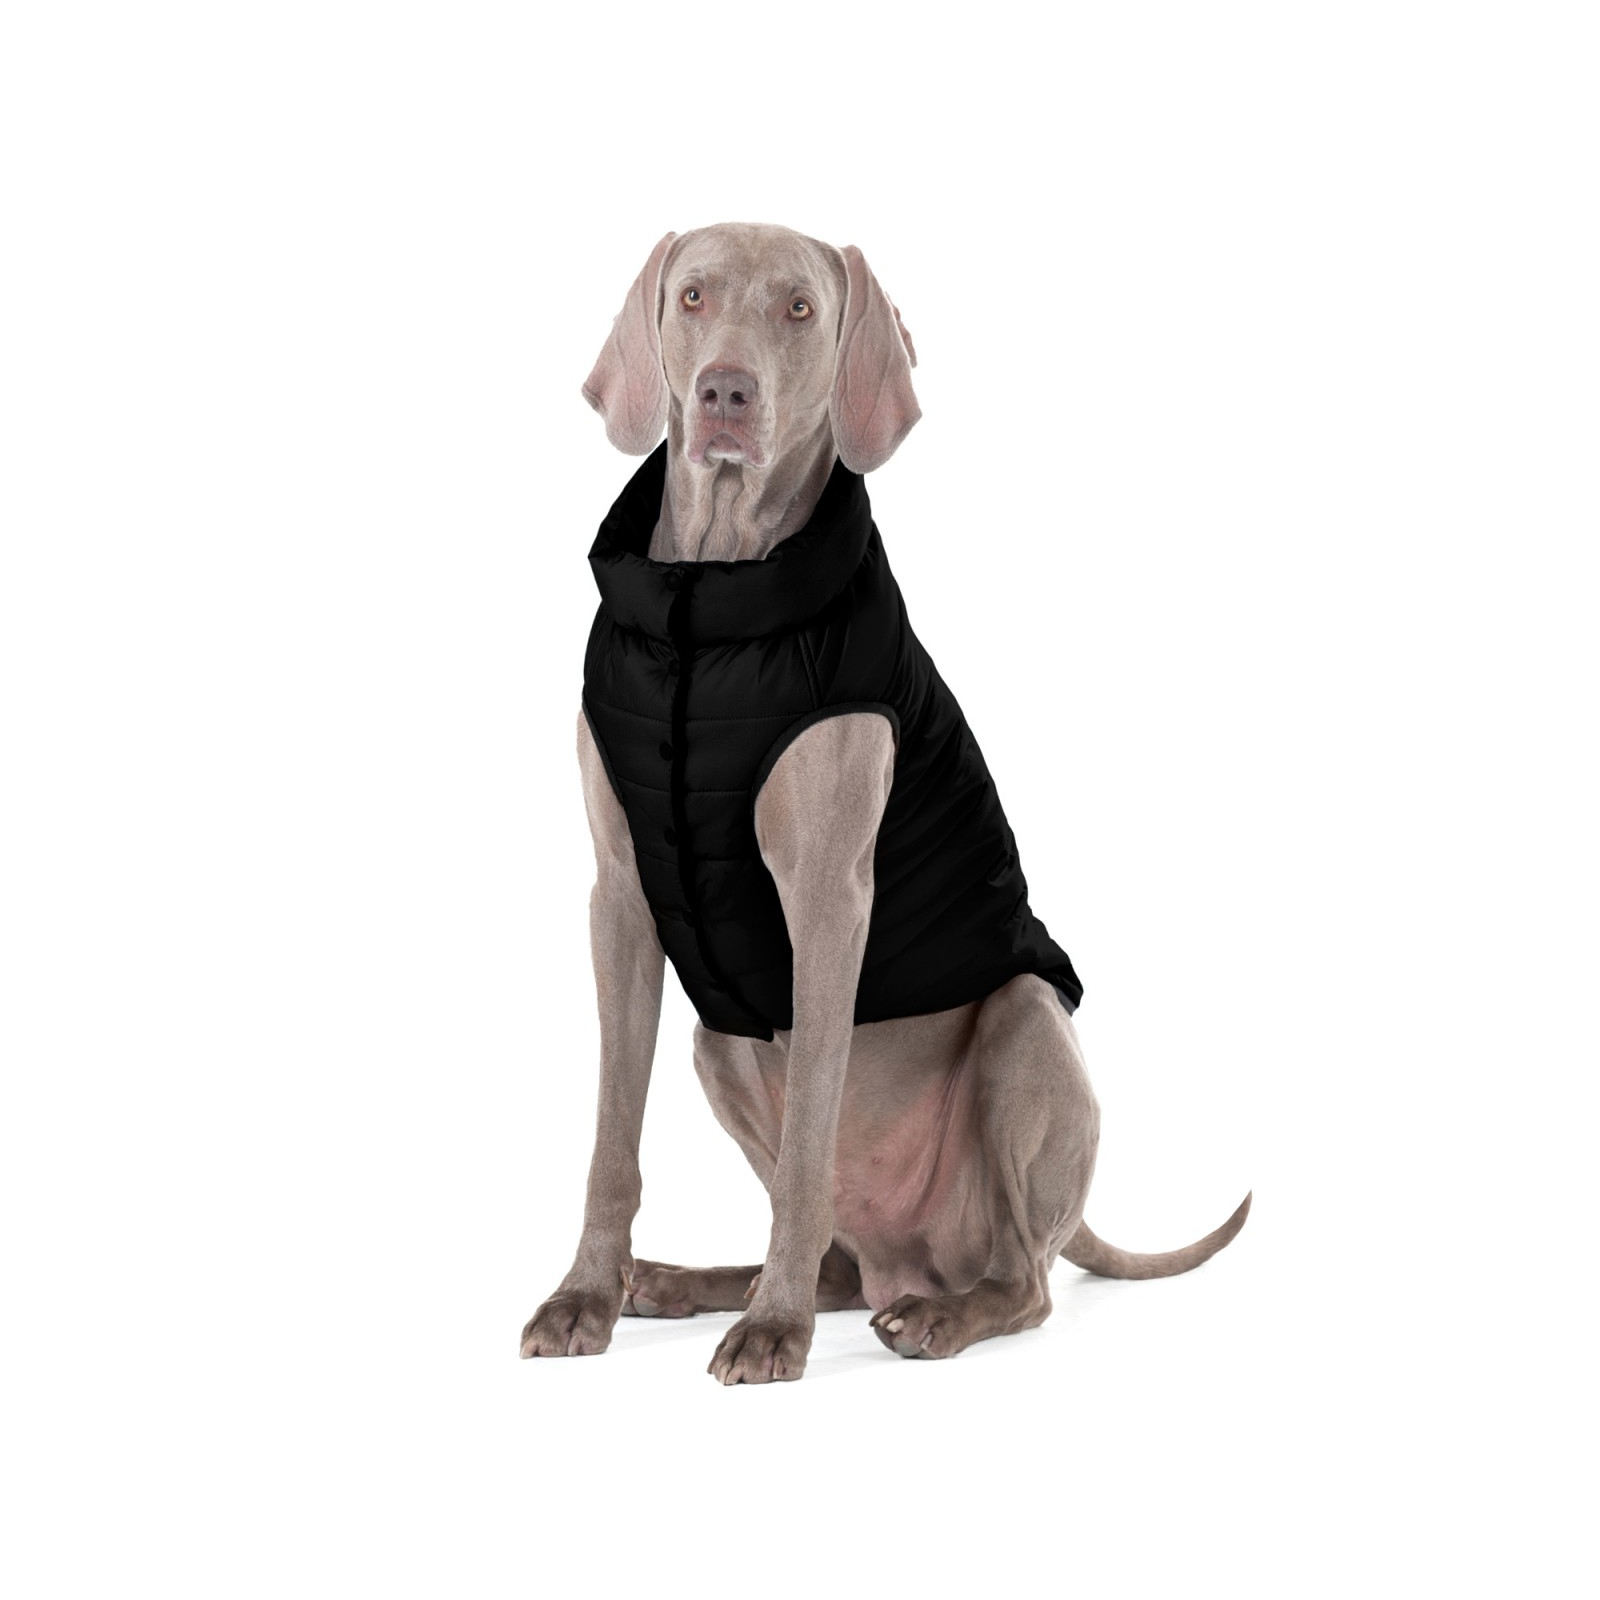 Курточка для животных Airy Vest One М 45 черная (20681) изображение 7